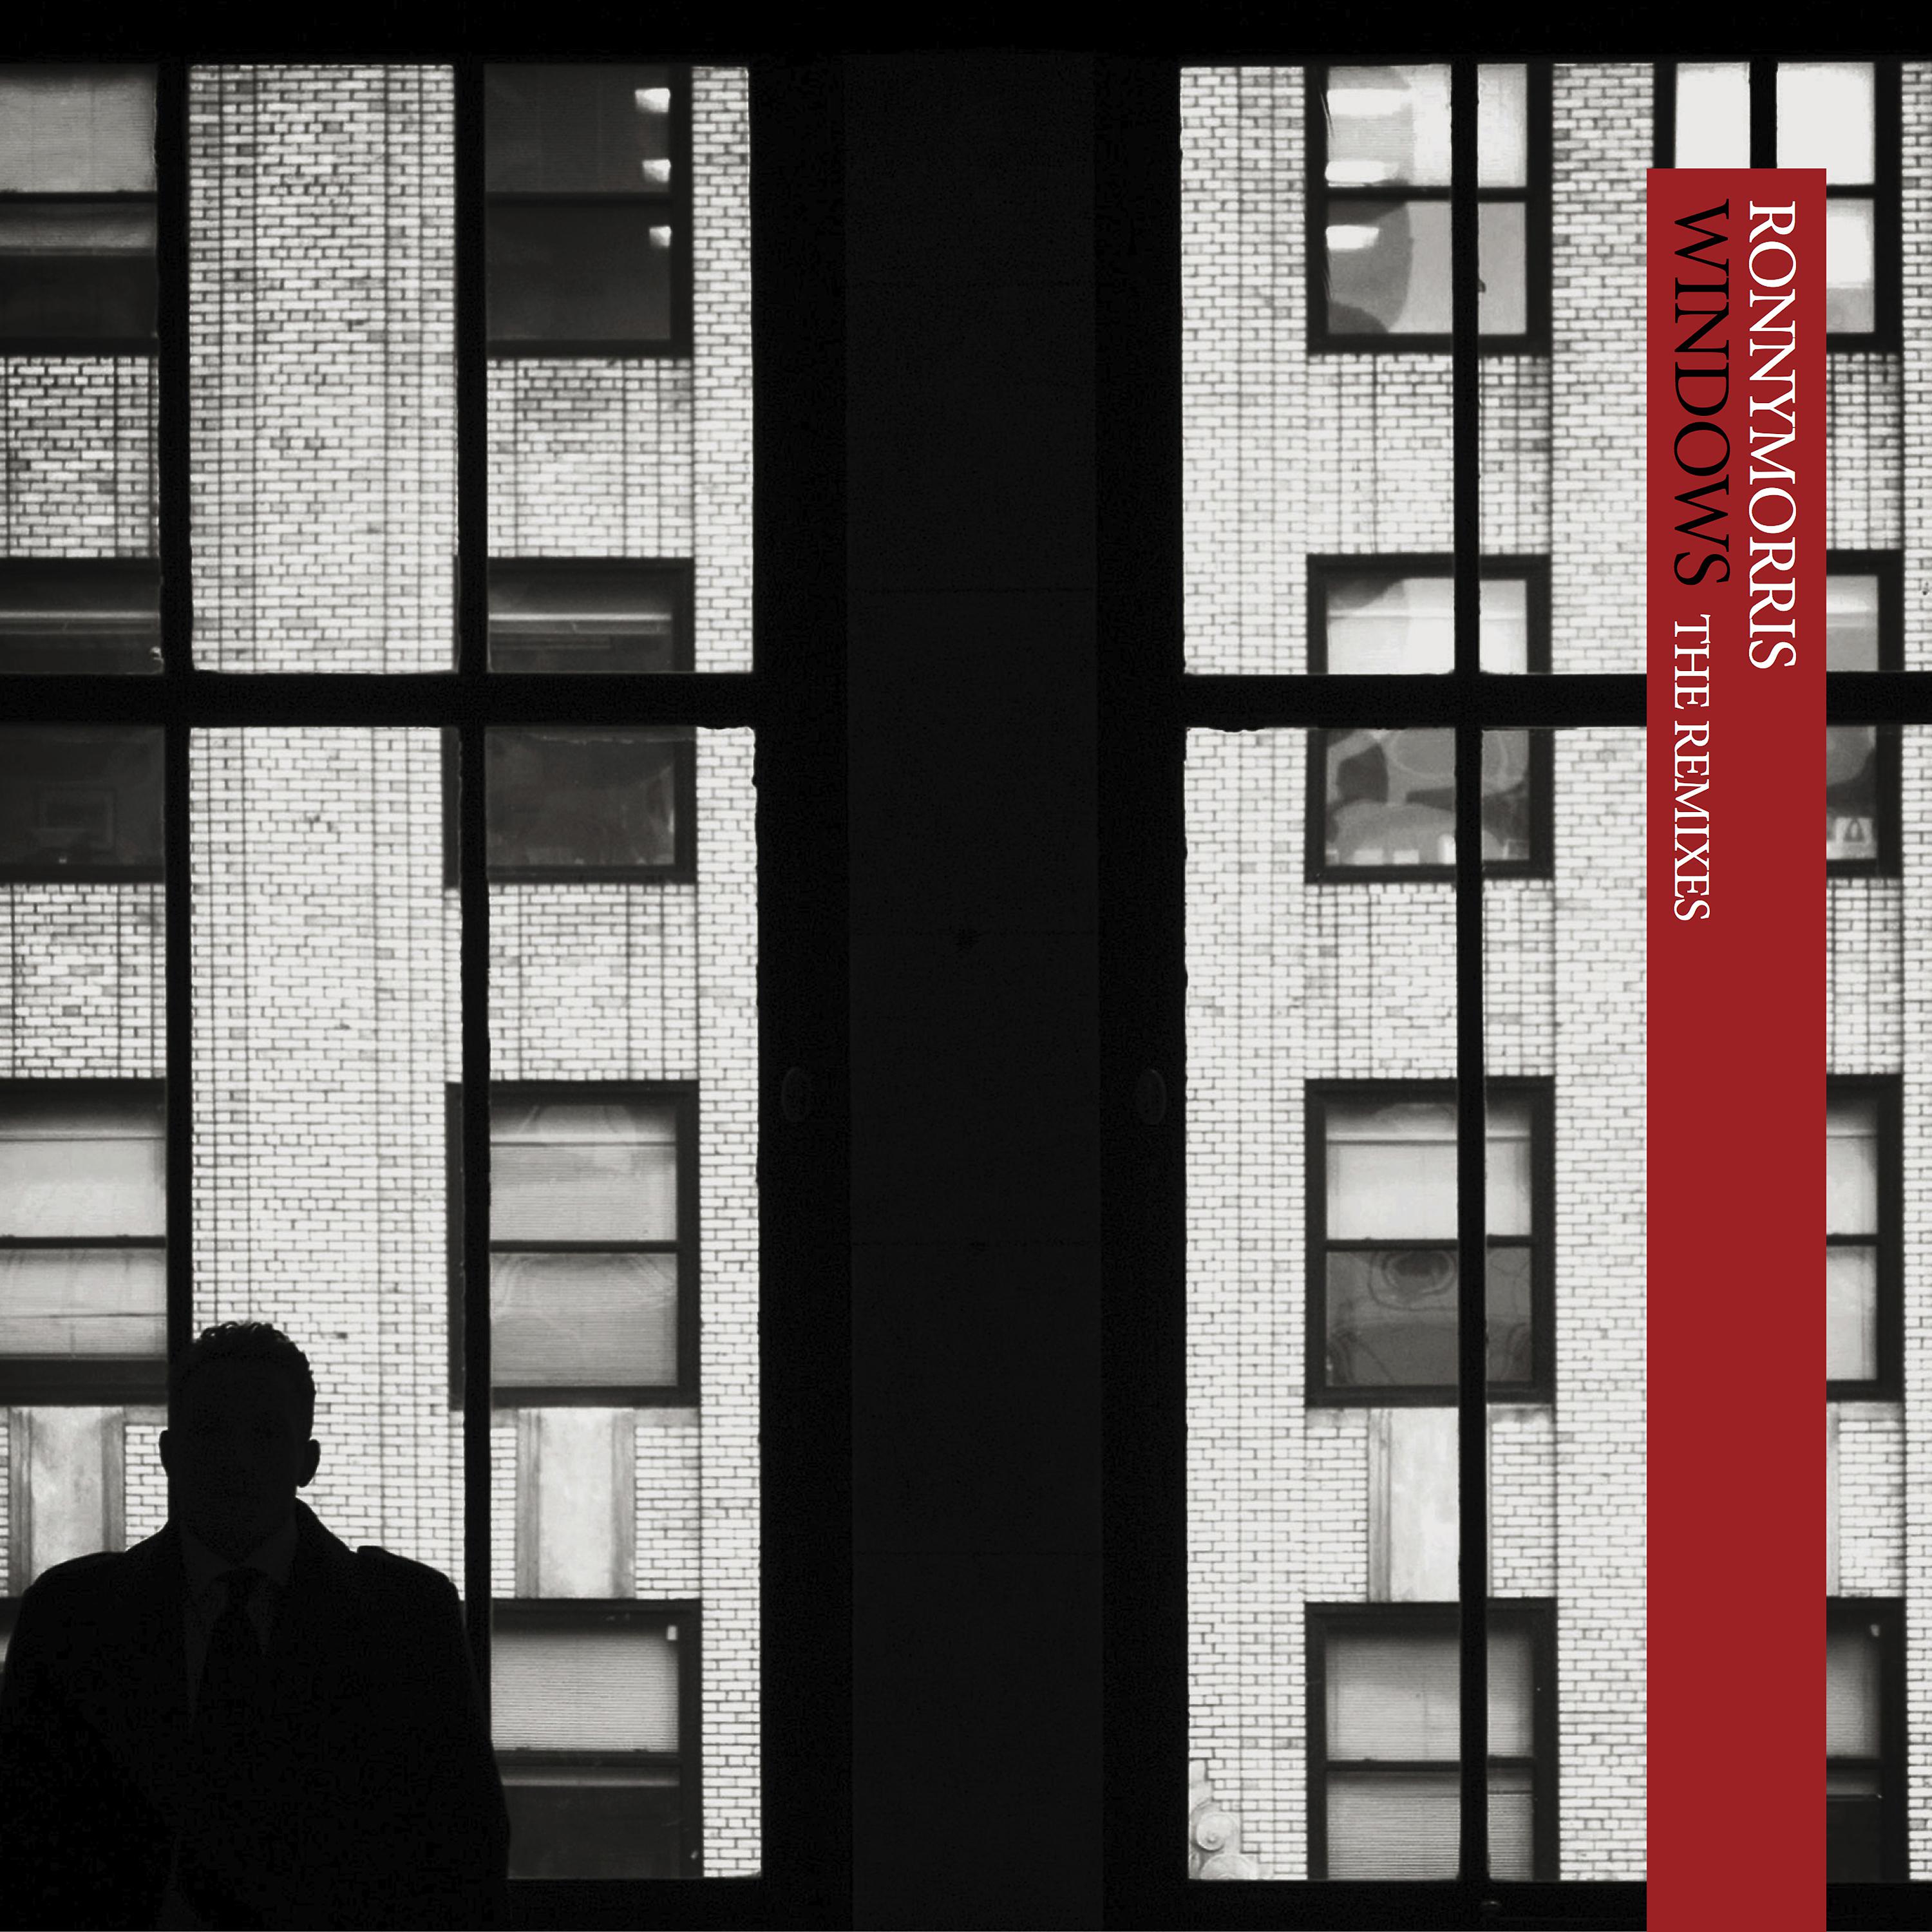 Постер альбома Windows (The Remixes)